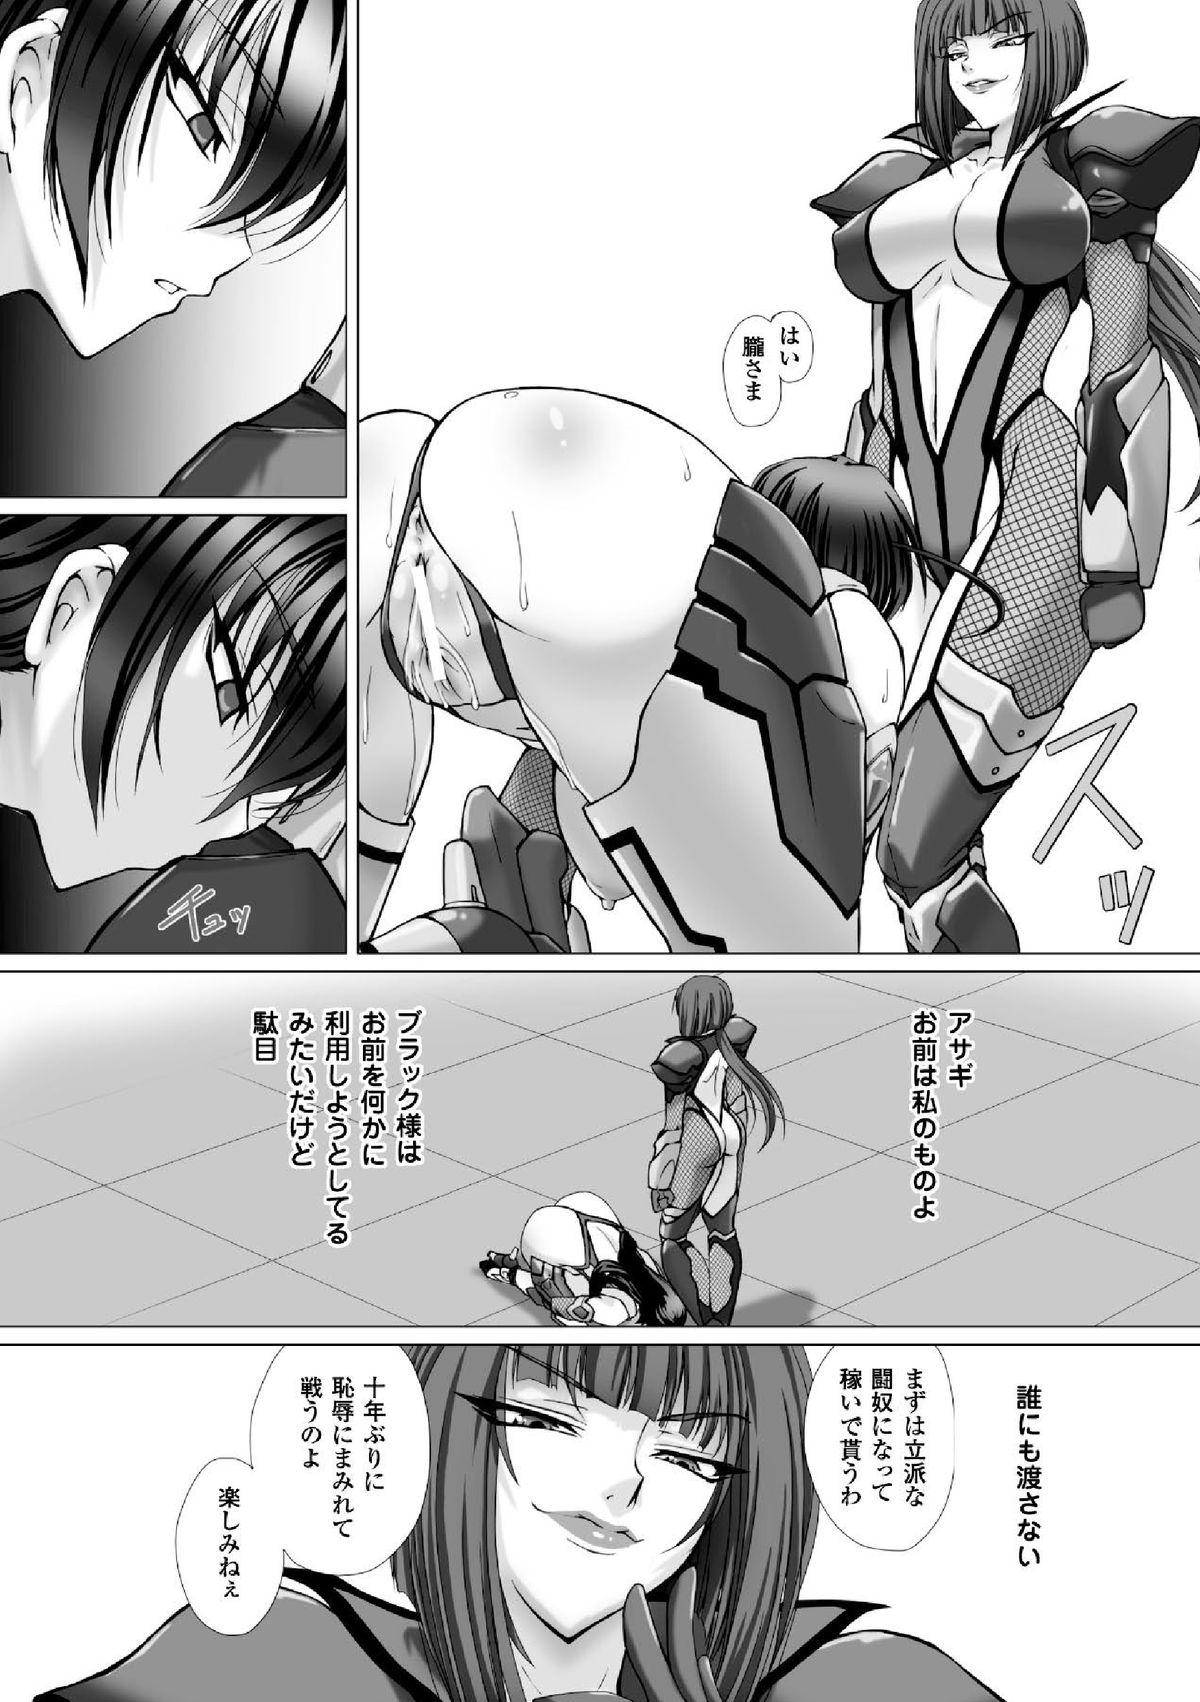 Selfie Megami Crisis 16 - Taimanin asagi Kangoku senkan Koutetsu no majo annerose Deflowered - Page 10